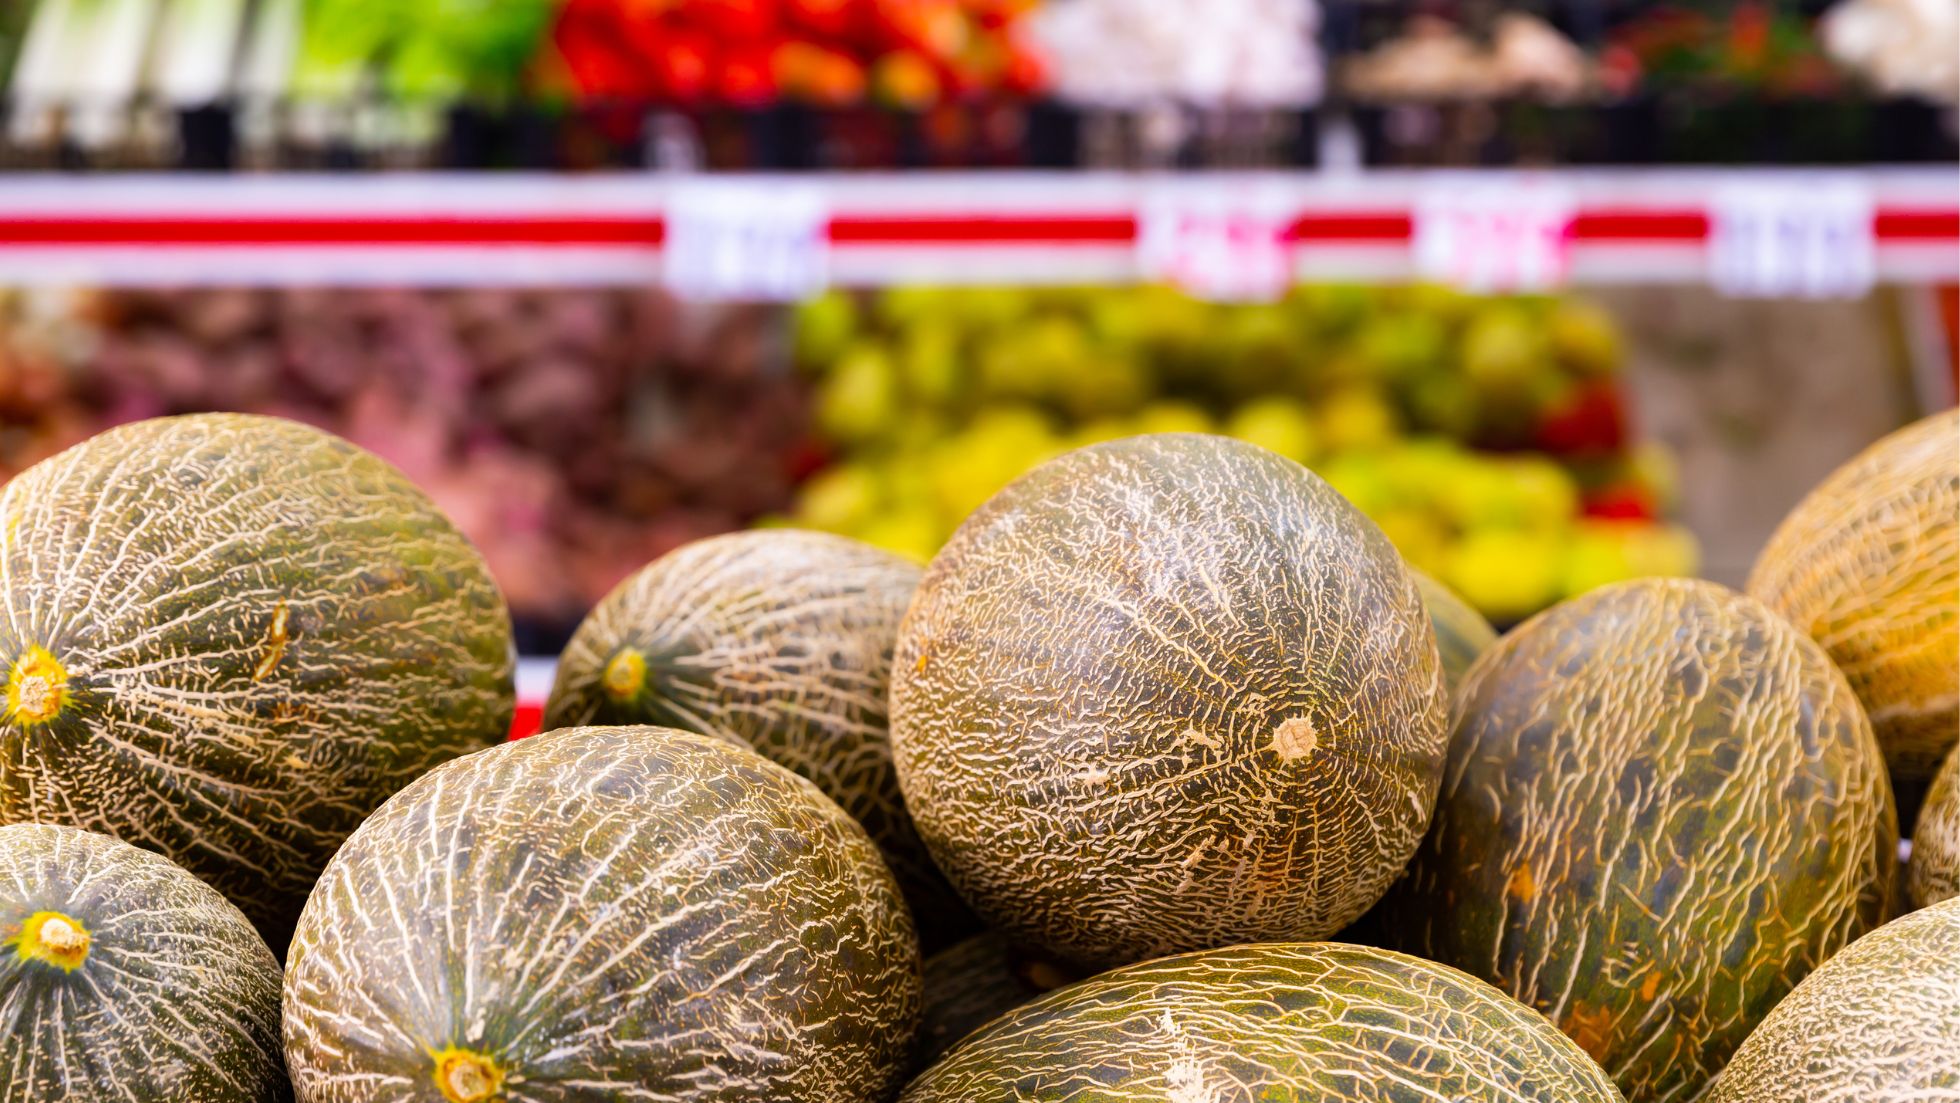 elegir melon supermercado